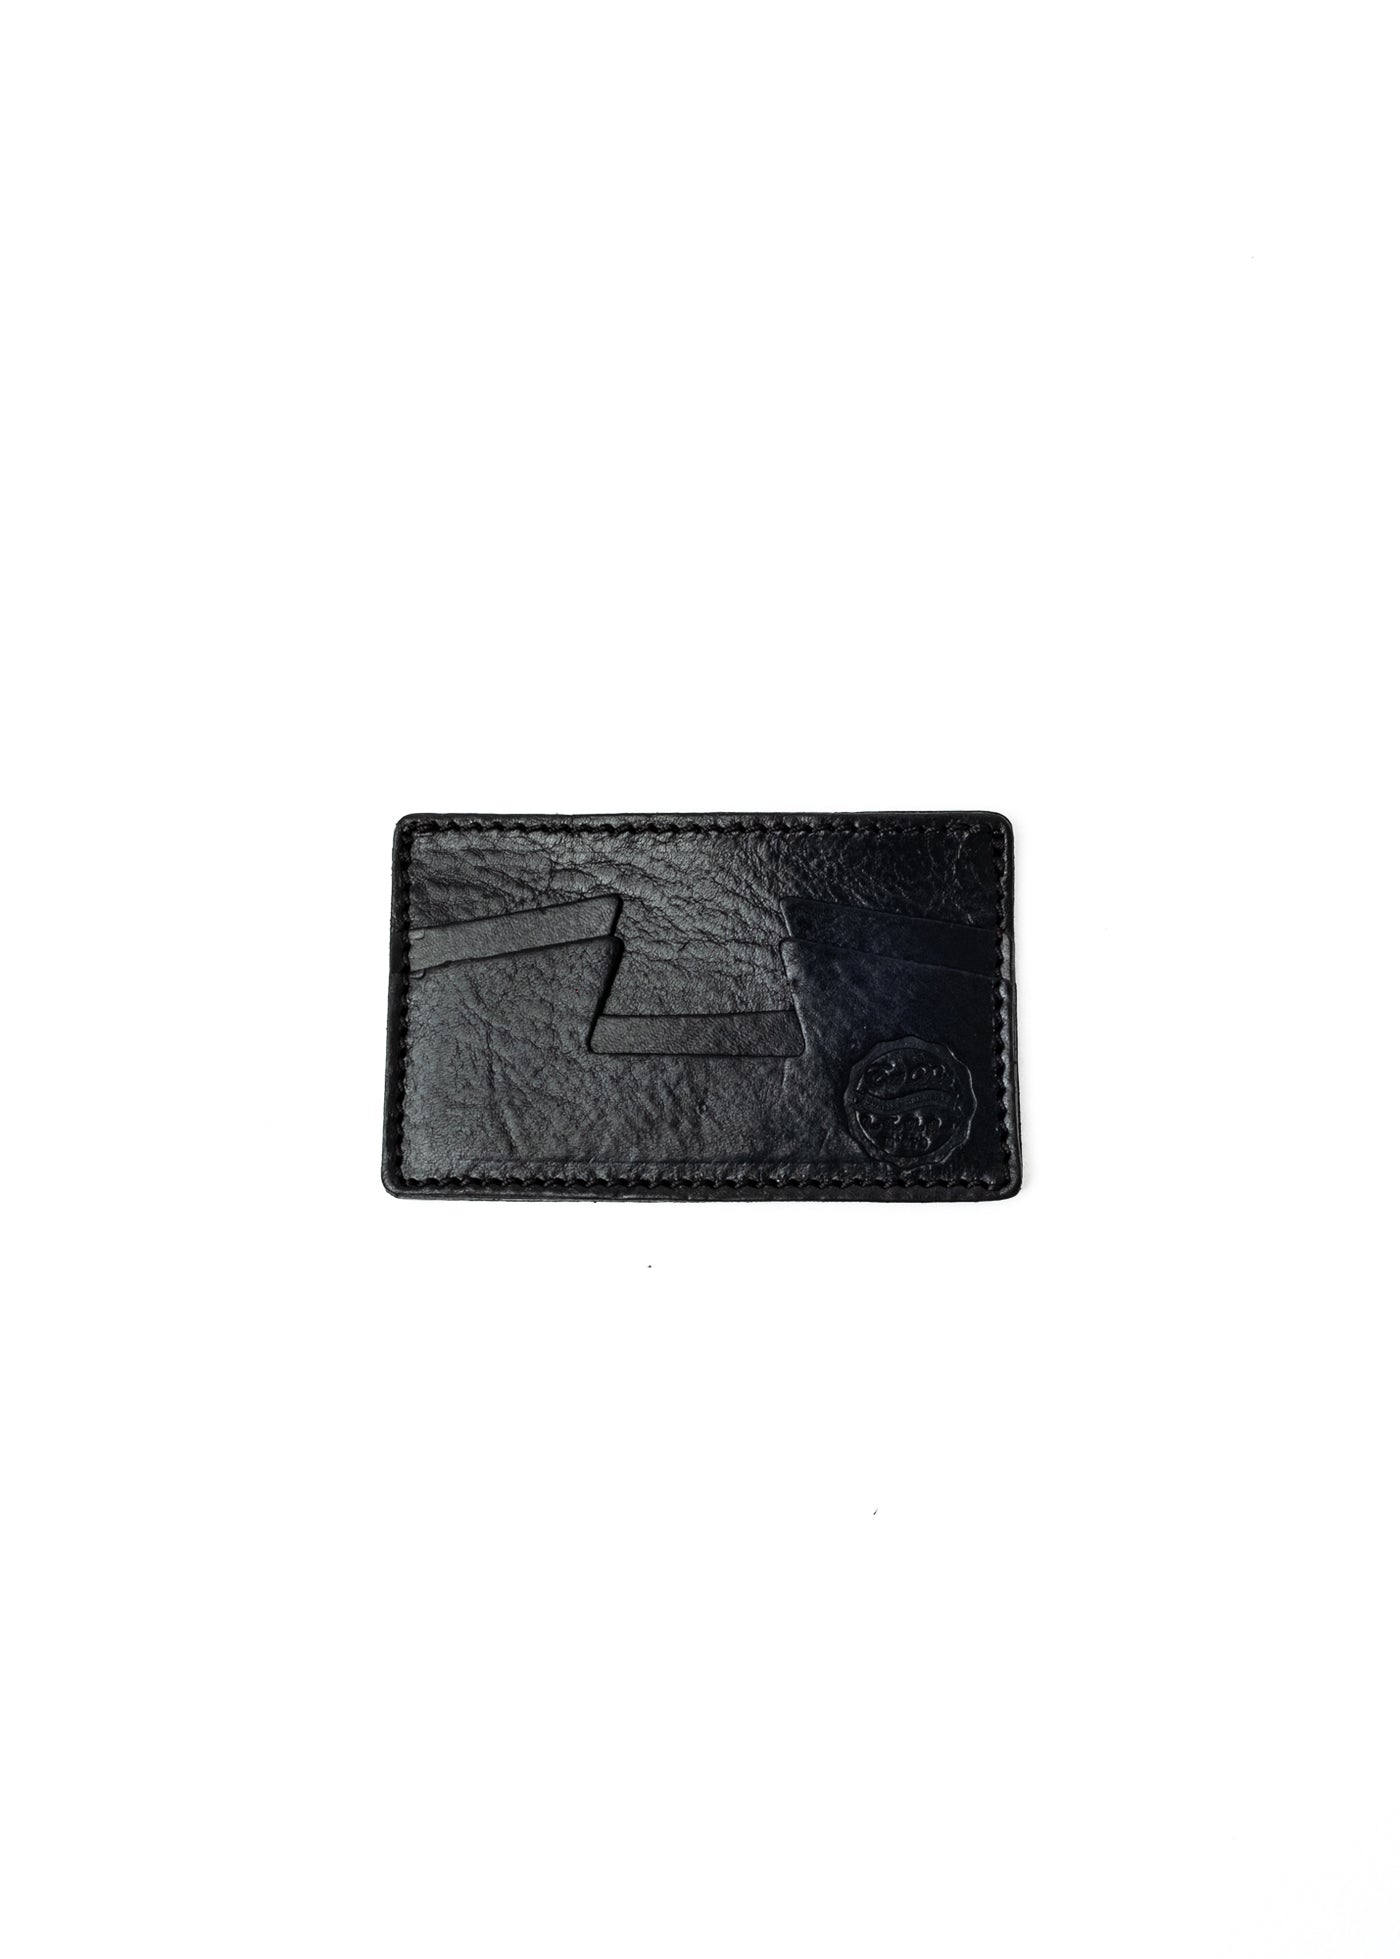 Leather Credit Card Holder Black